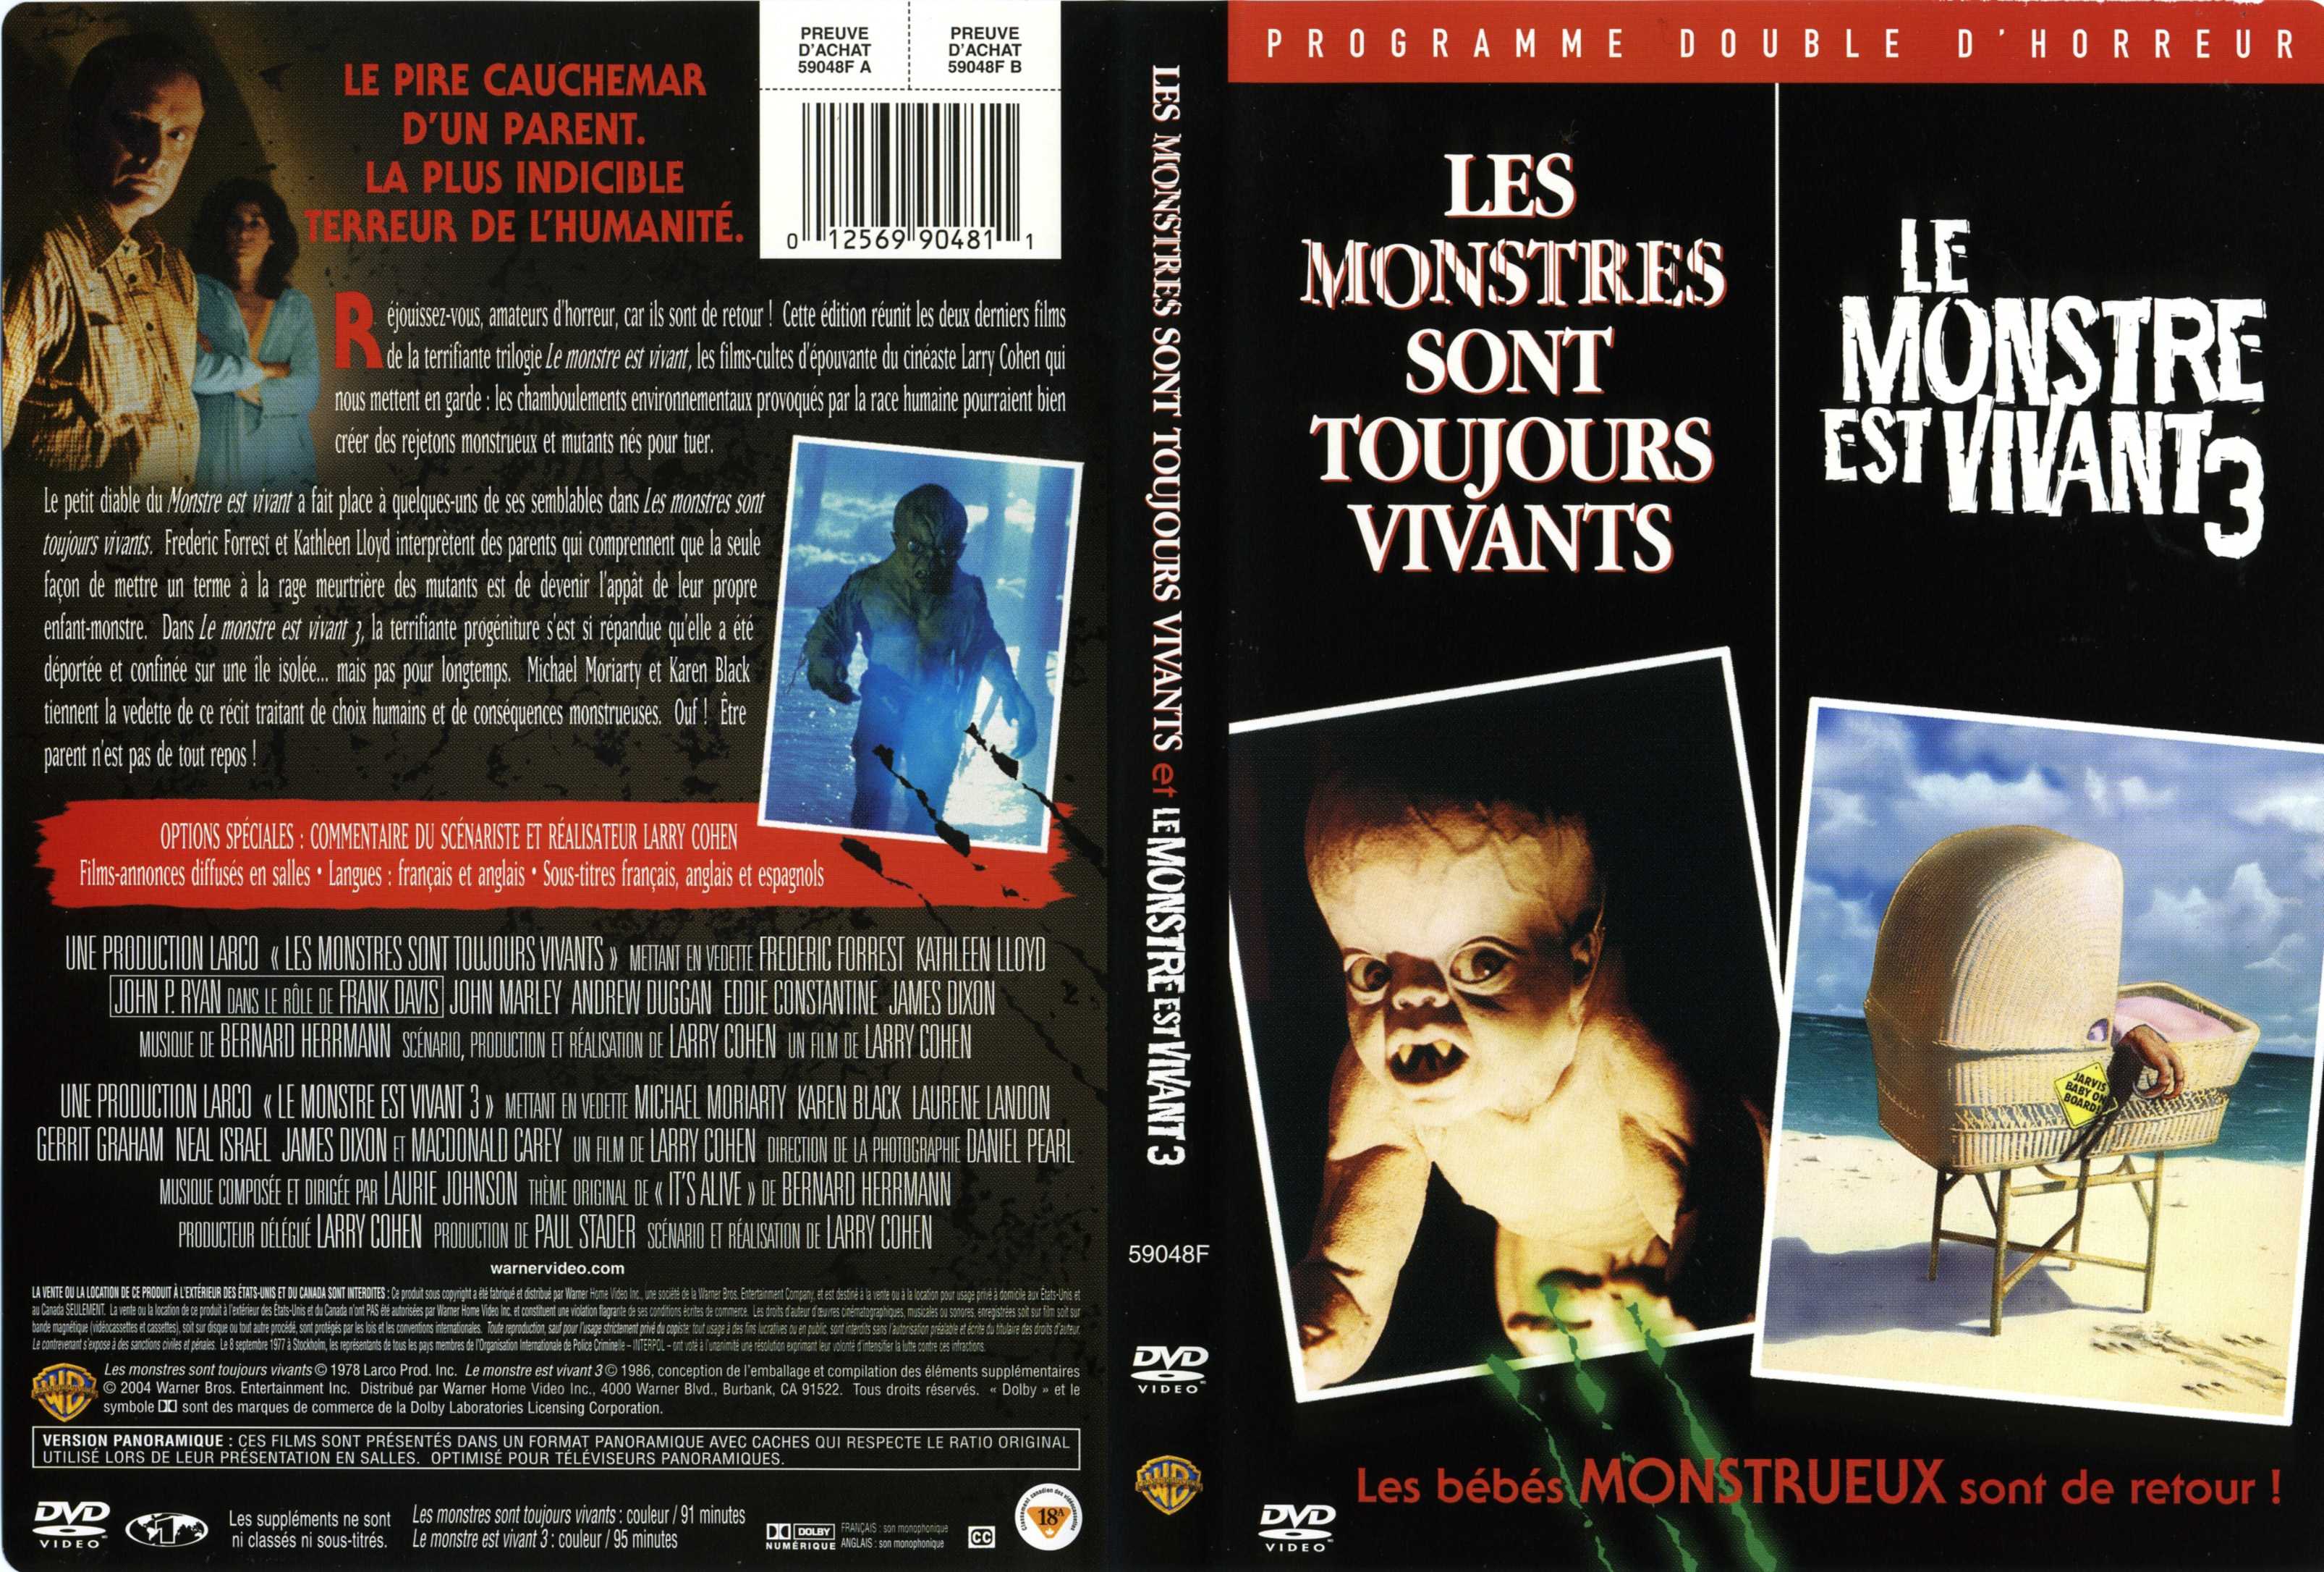 Jaquette DVD Les monstres sont toujours vivants et le monstre est vivant 3